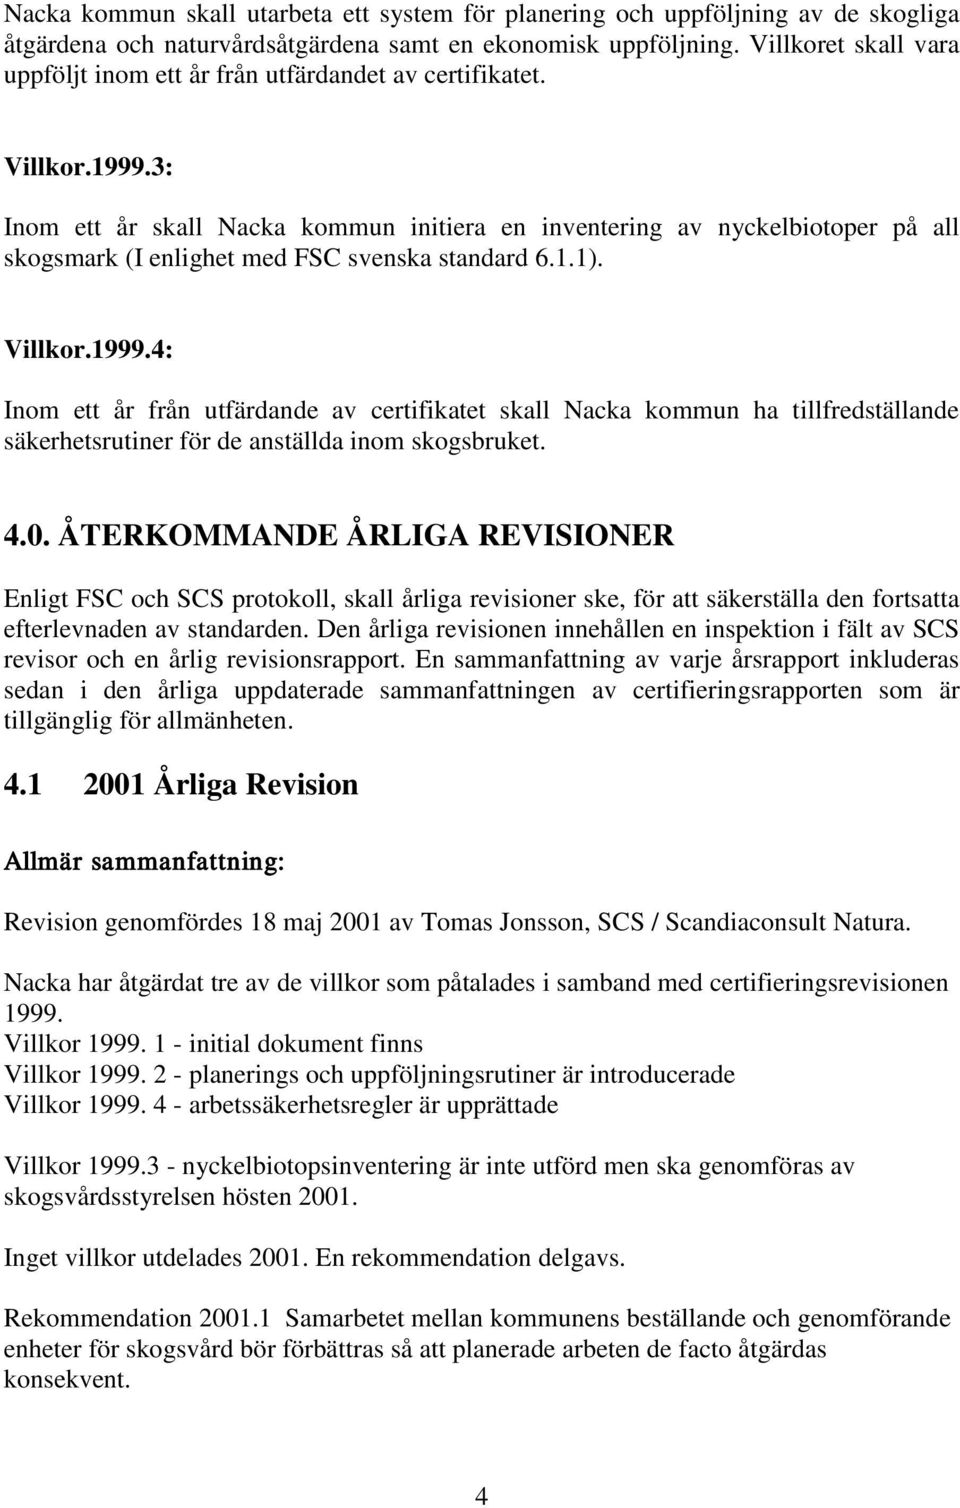 3: Inom ett år skall Nacka kommun initiera en inventering av nyckelbiotoper på all skogsmark (I enlighet med FSC svenska standard 6.1.1). Villkor.1999.